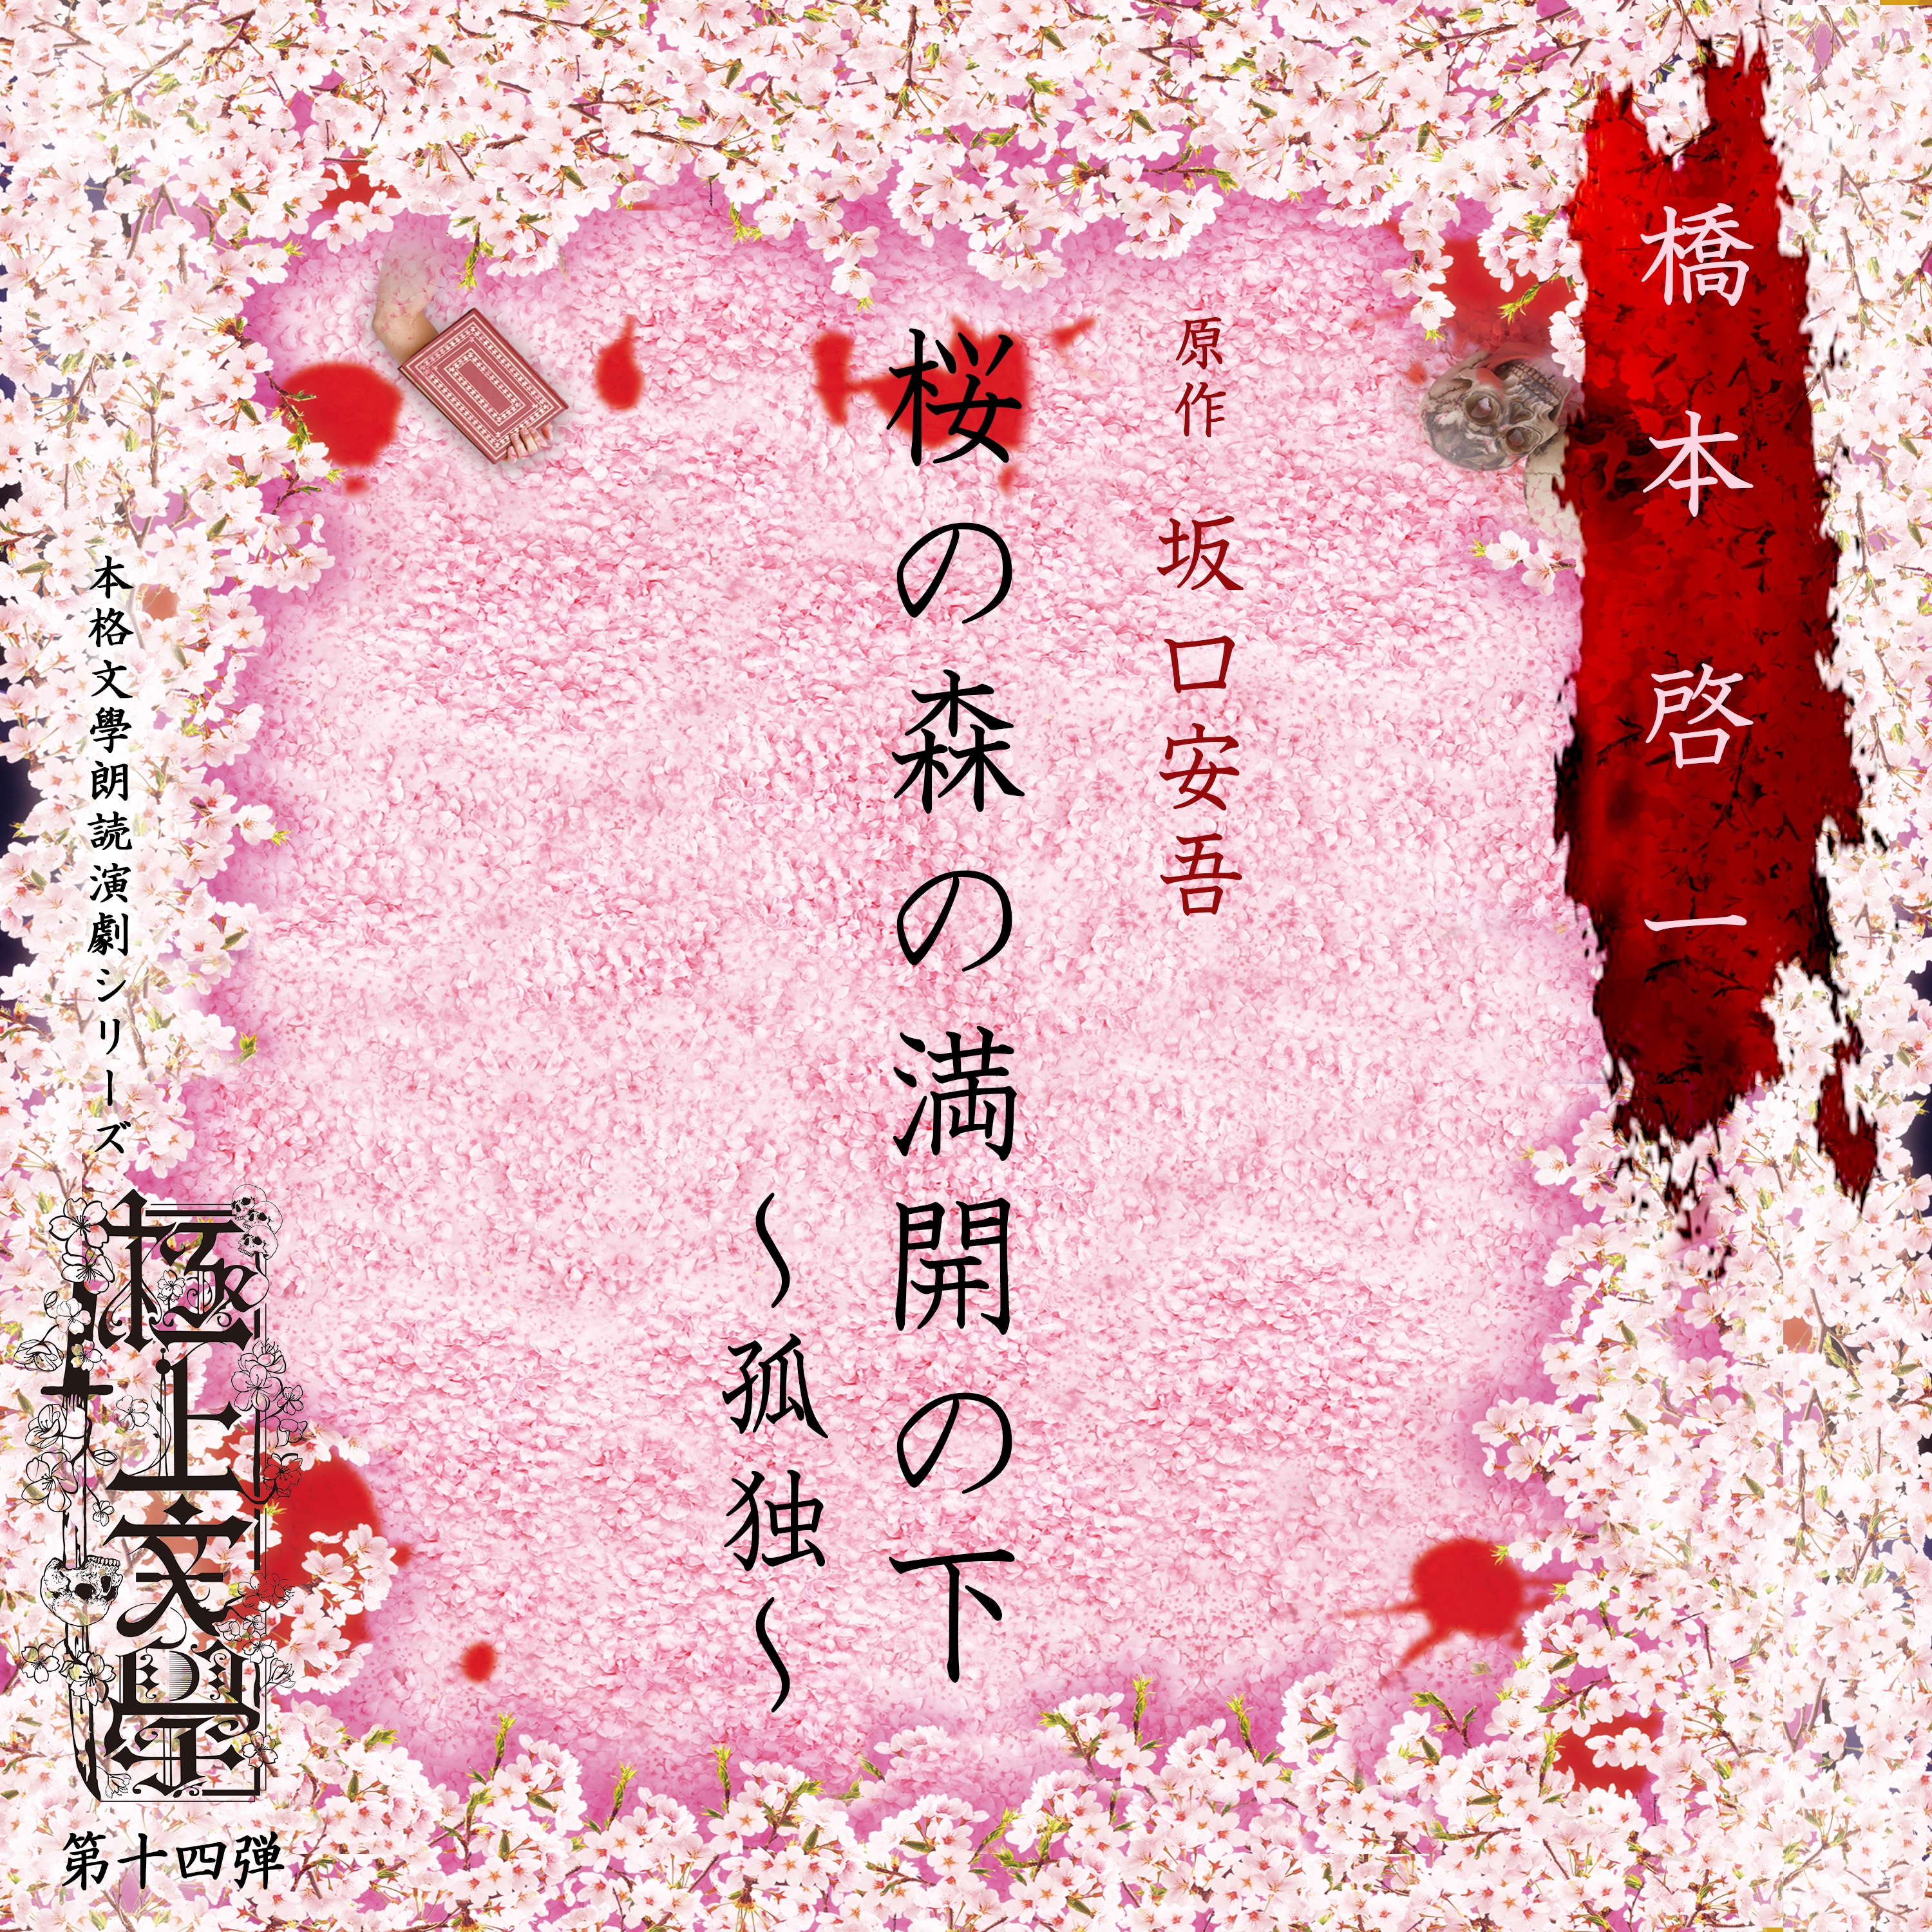 極上文學第十四弾「桜の森の満開の下~孤独~」  [DVD]